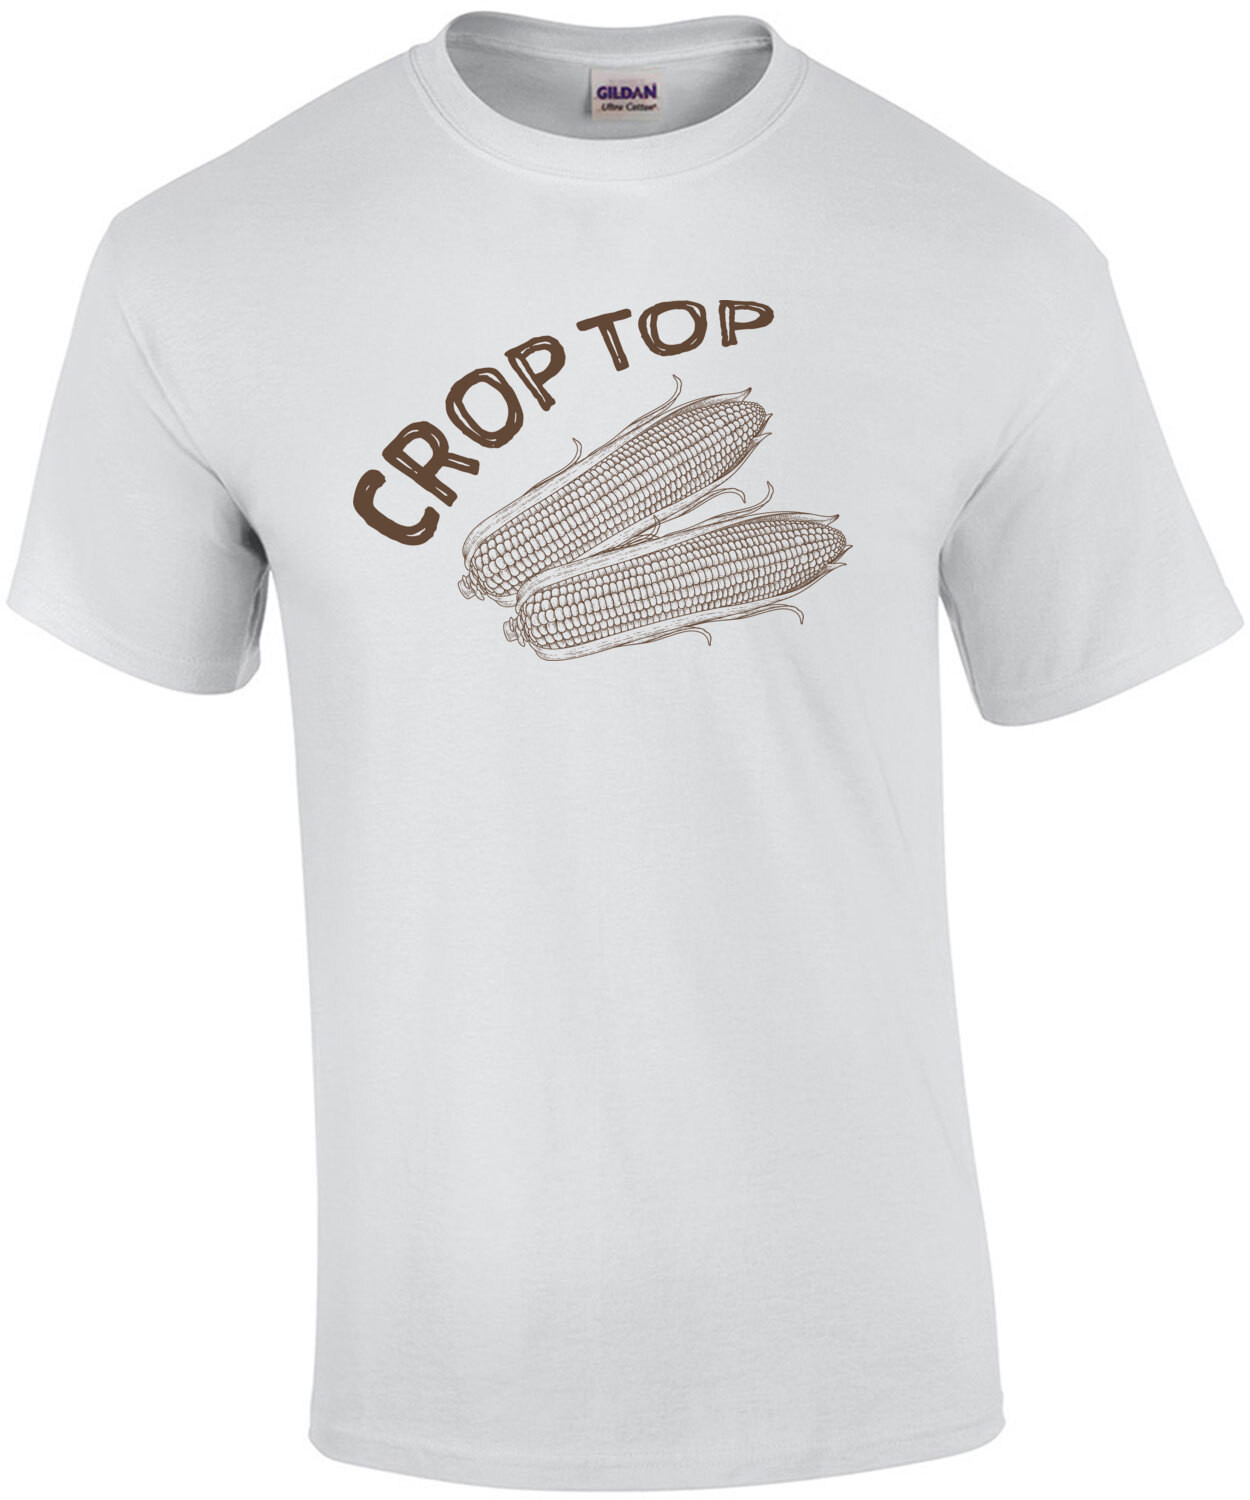 Crop Top - Funny Ladies Pun T-Shirt